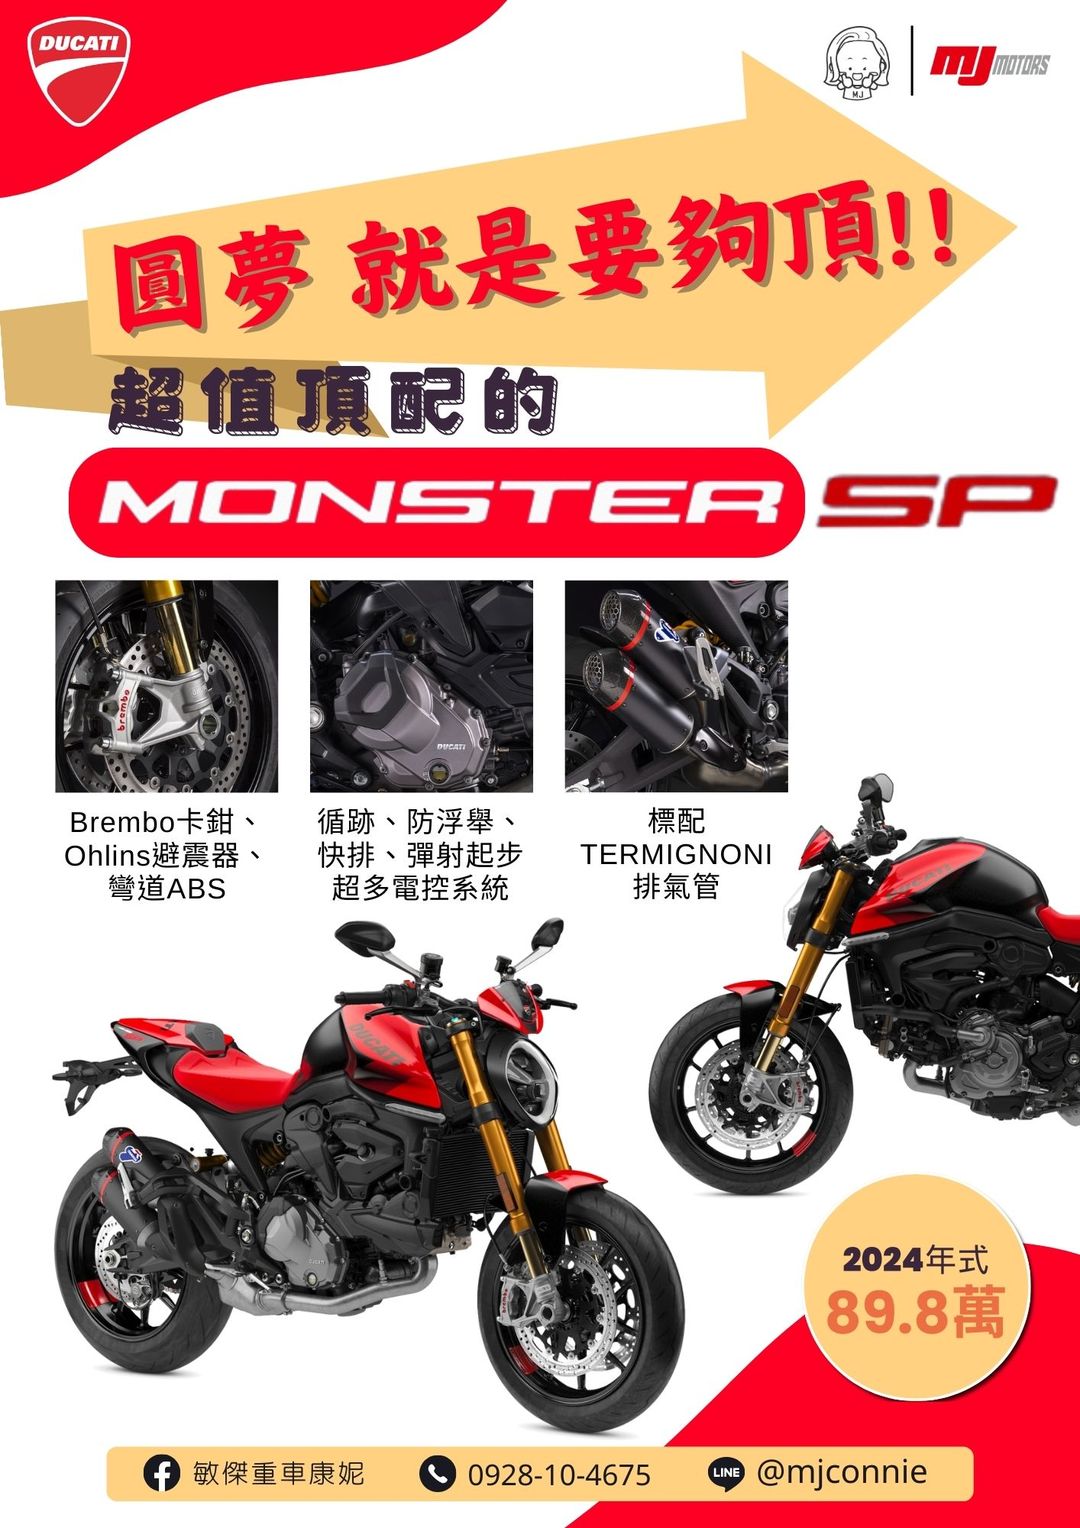 【敏傑車業資深銷售專員 康妮 Connie】Ducati Monster SP - 「Webike-摩托車市」 『敏傑康妮』Ducati Monster SP 迷人聲浪/ 進退快排/ 彎道ABS 配備一定很好!2024式樣89.8萬